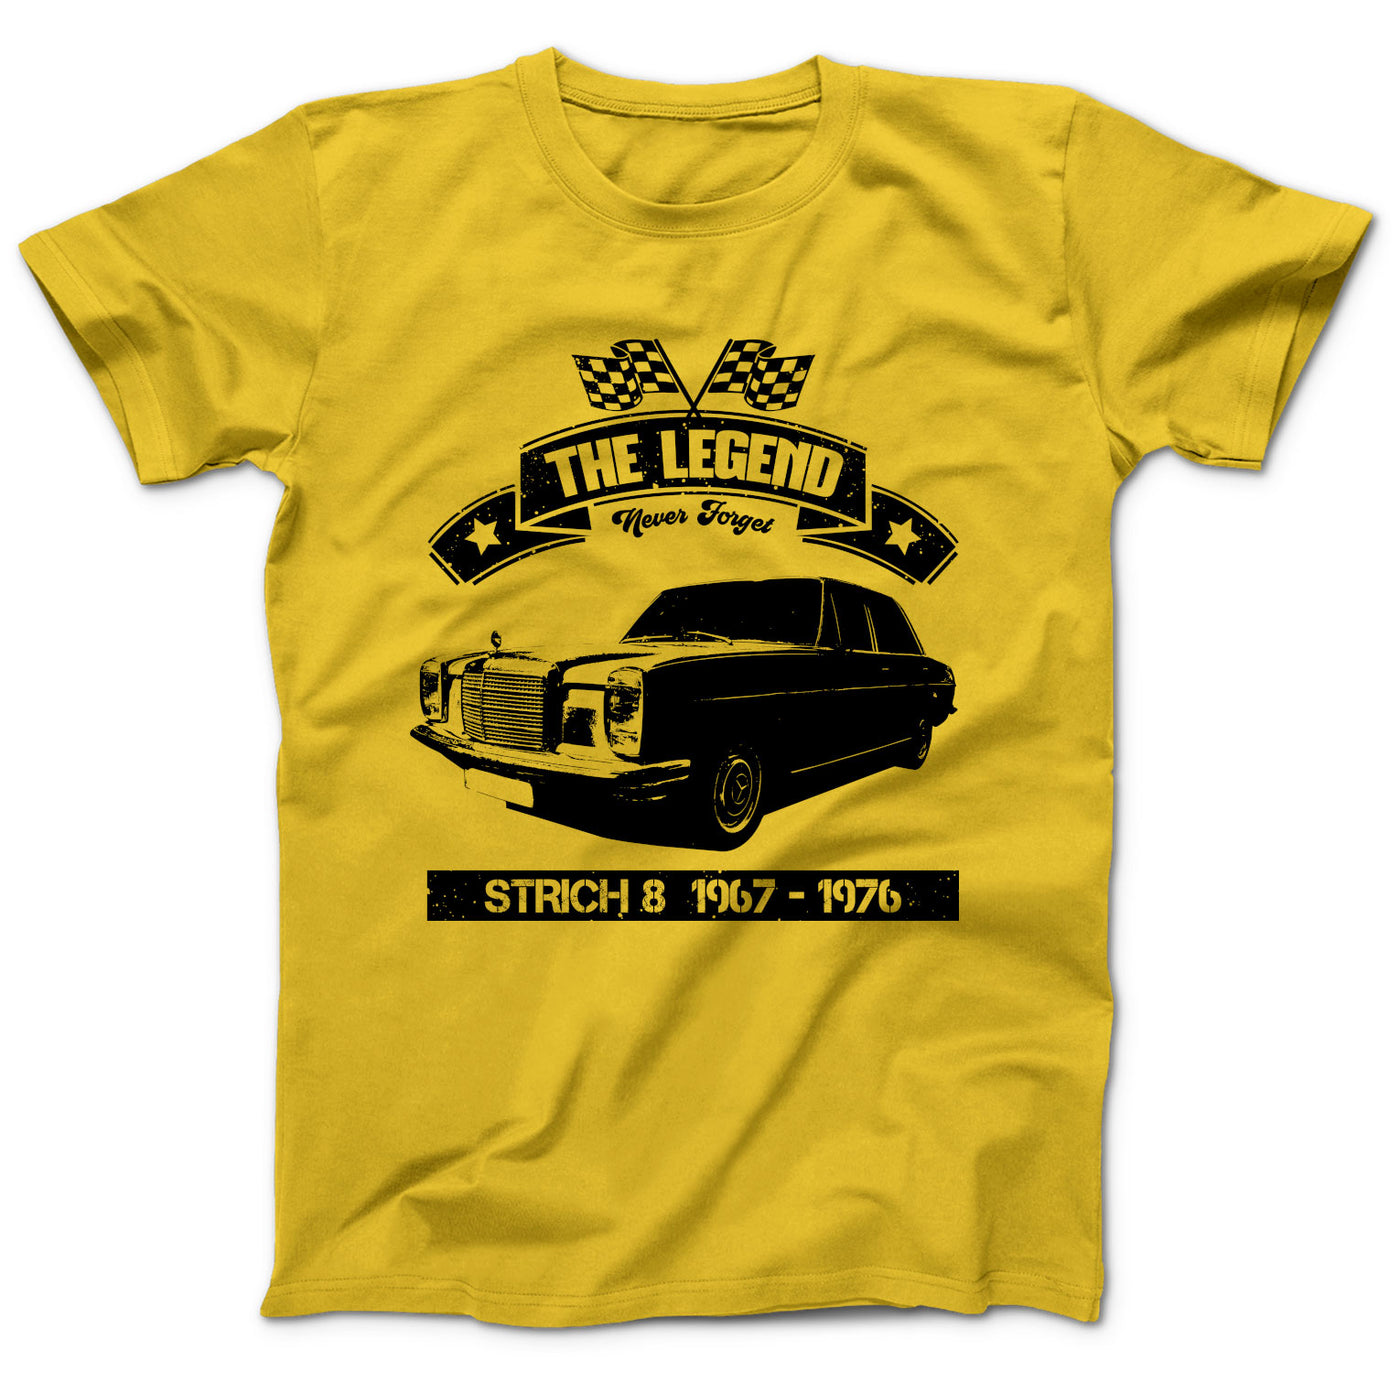 strich-8-oldtimer-shirt-gelb-dd138mts